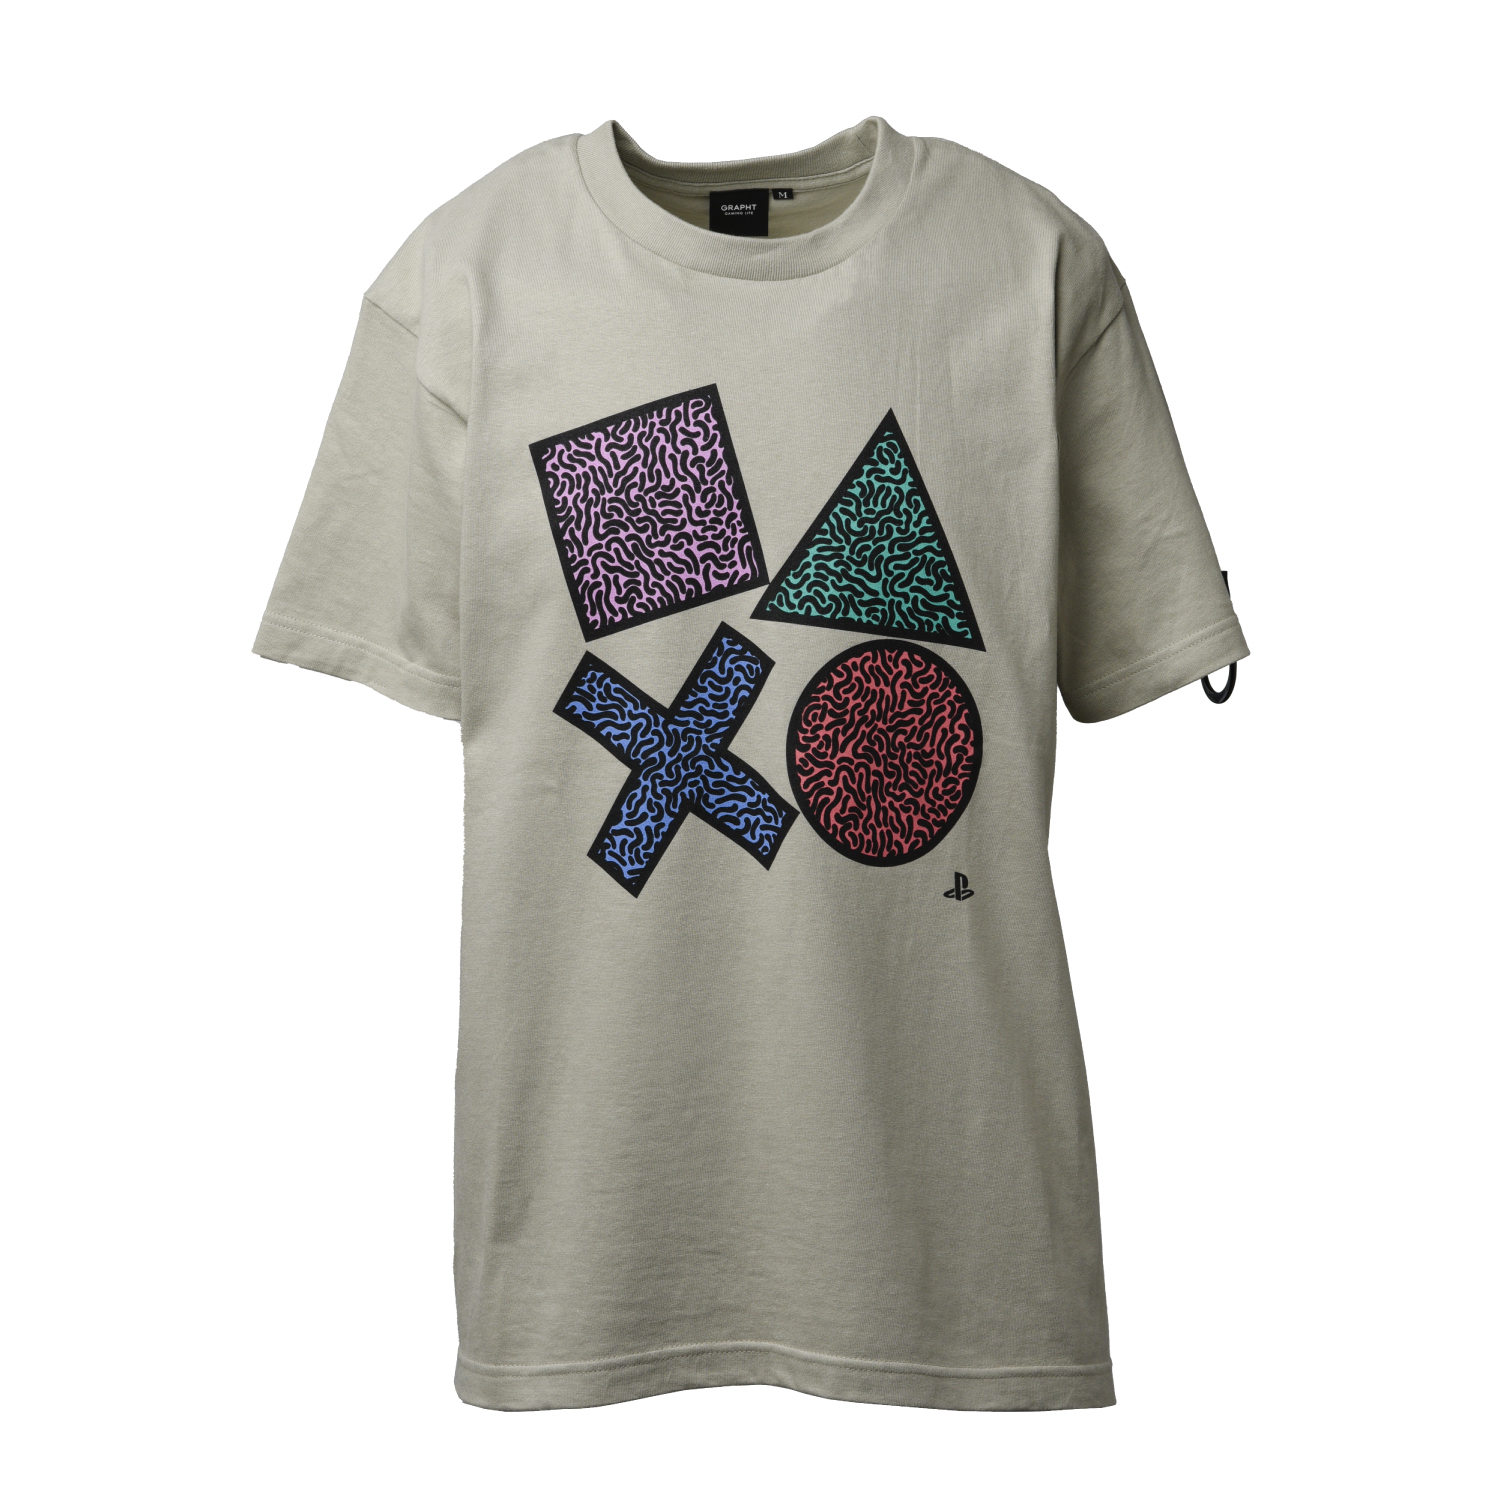 Playstation公式ライセンスの とってもオシャレなデザインtシャツが発売 Mutyunのゲーム Aブログ